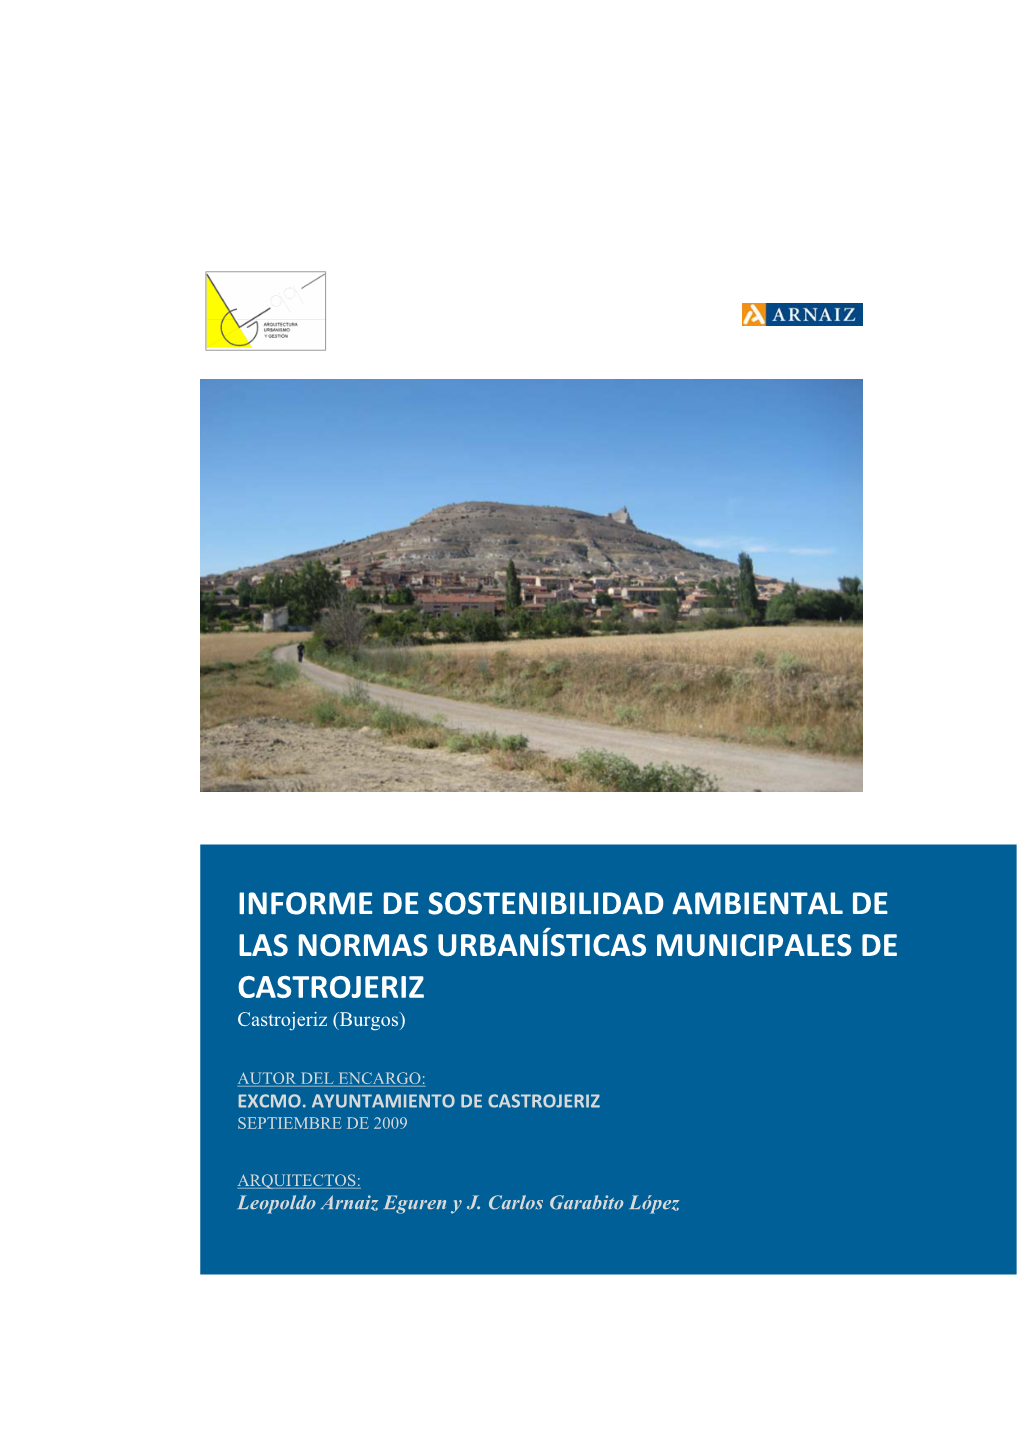 INFORME DE SOSTENIBILIDAD AMBIENTAL DE LAS NORMAS URBANÍSTICAS MUNICIPALES DE CASTROJERIZ Castrojeriz (Burgos)